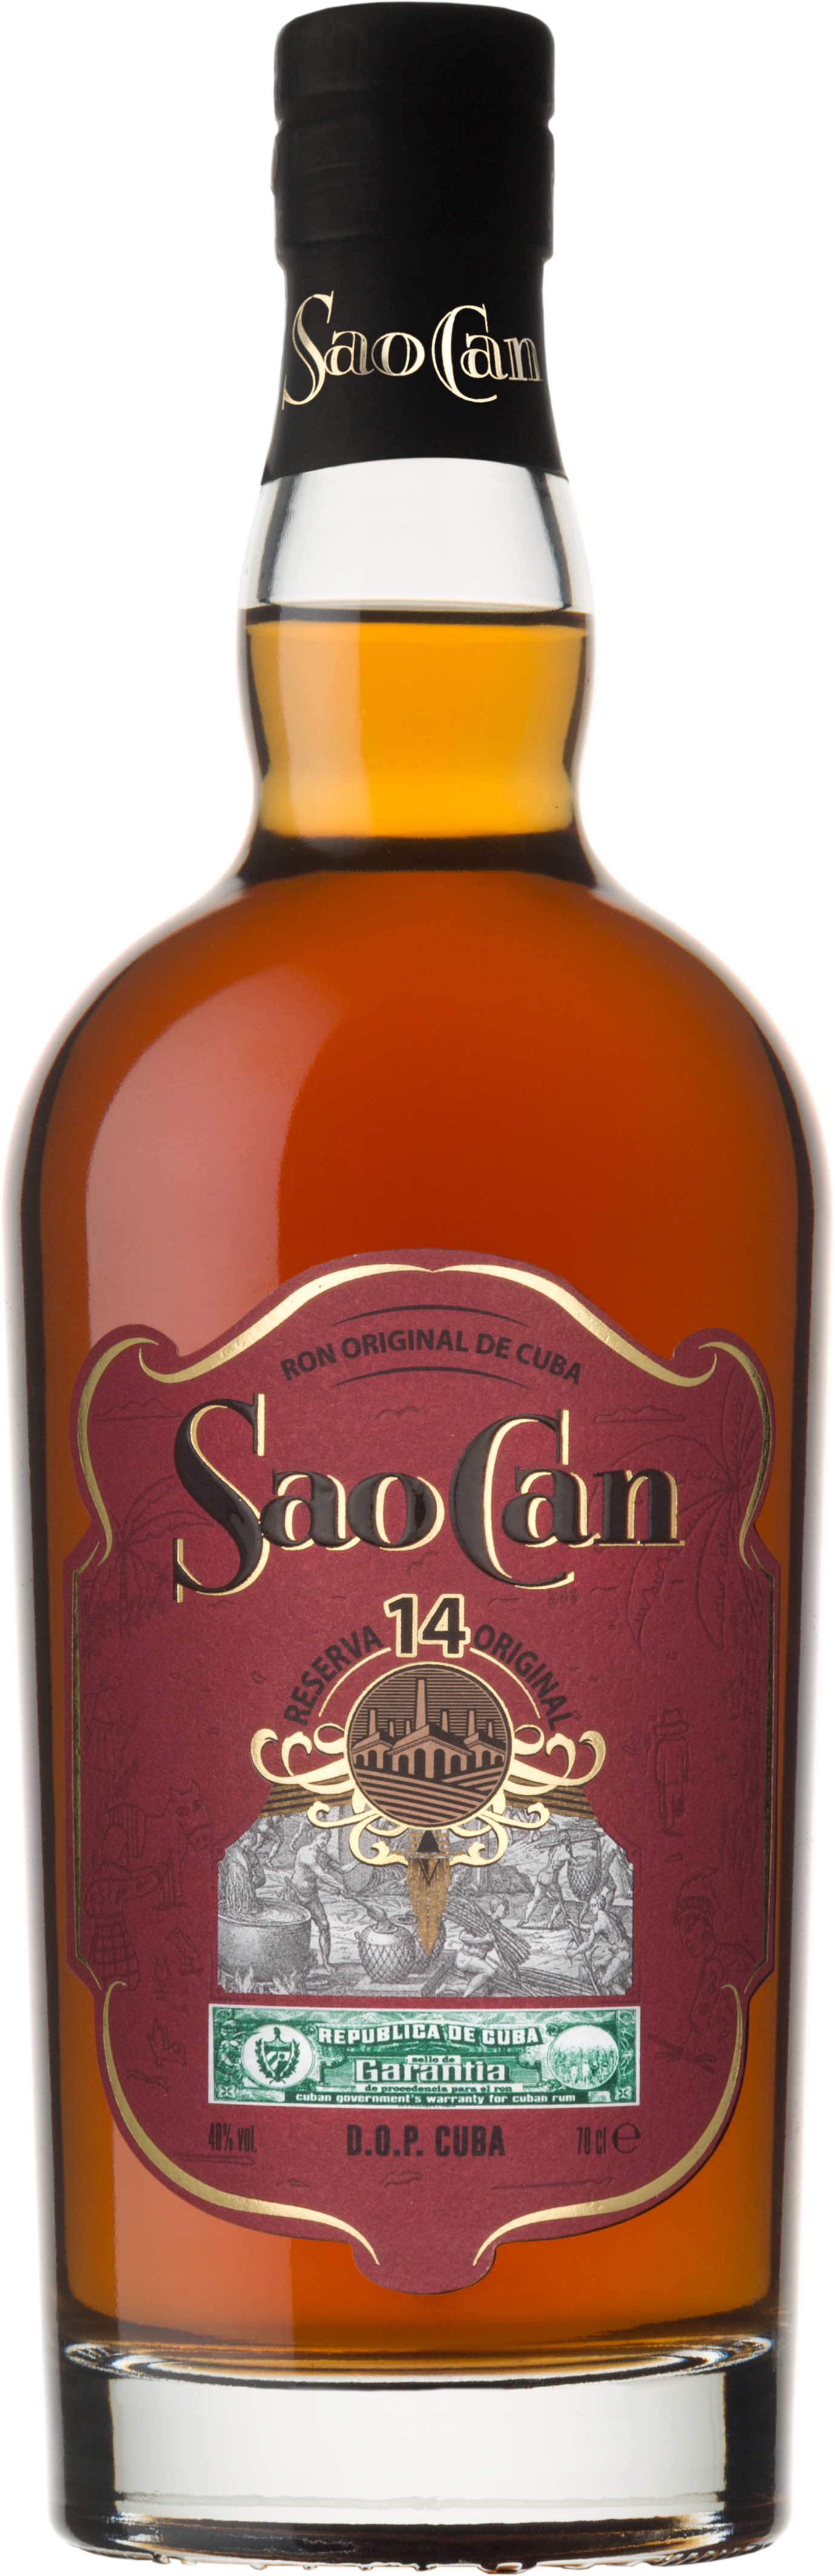 Sao Can Rum de Cuba Reserva 14 Jahre - 0,7l - 40% vol.